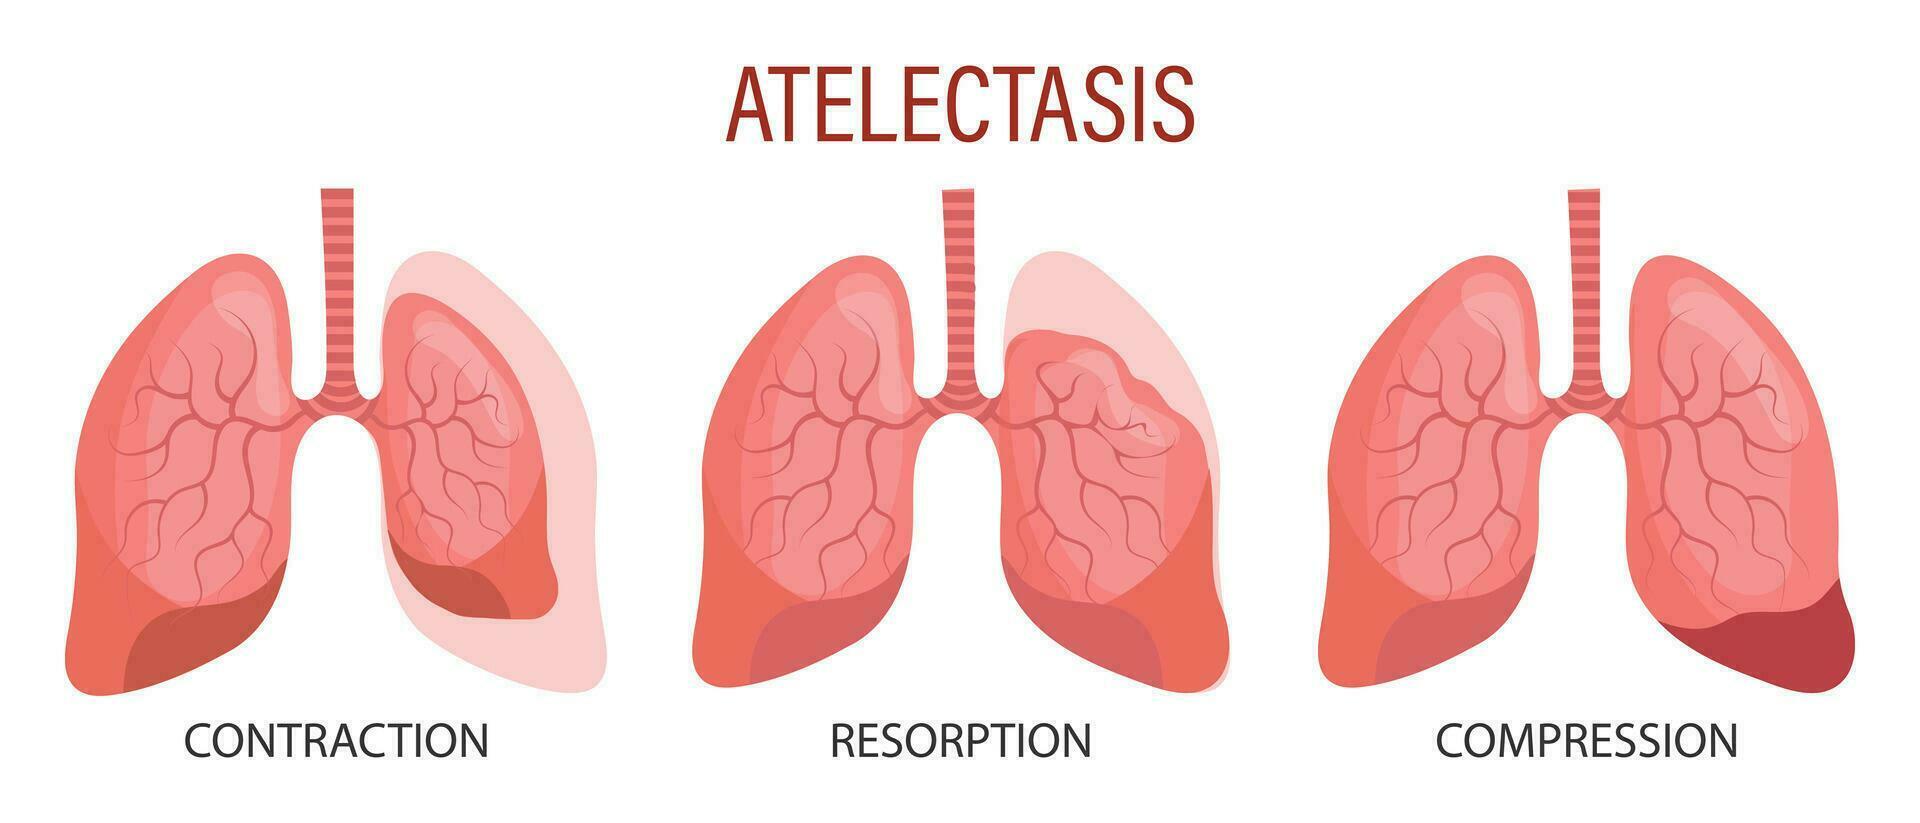 atelectasia, un pulmón enfermedad. contracción, reabsorción, compresión. médico infografía bandera, ilustración, vector